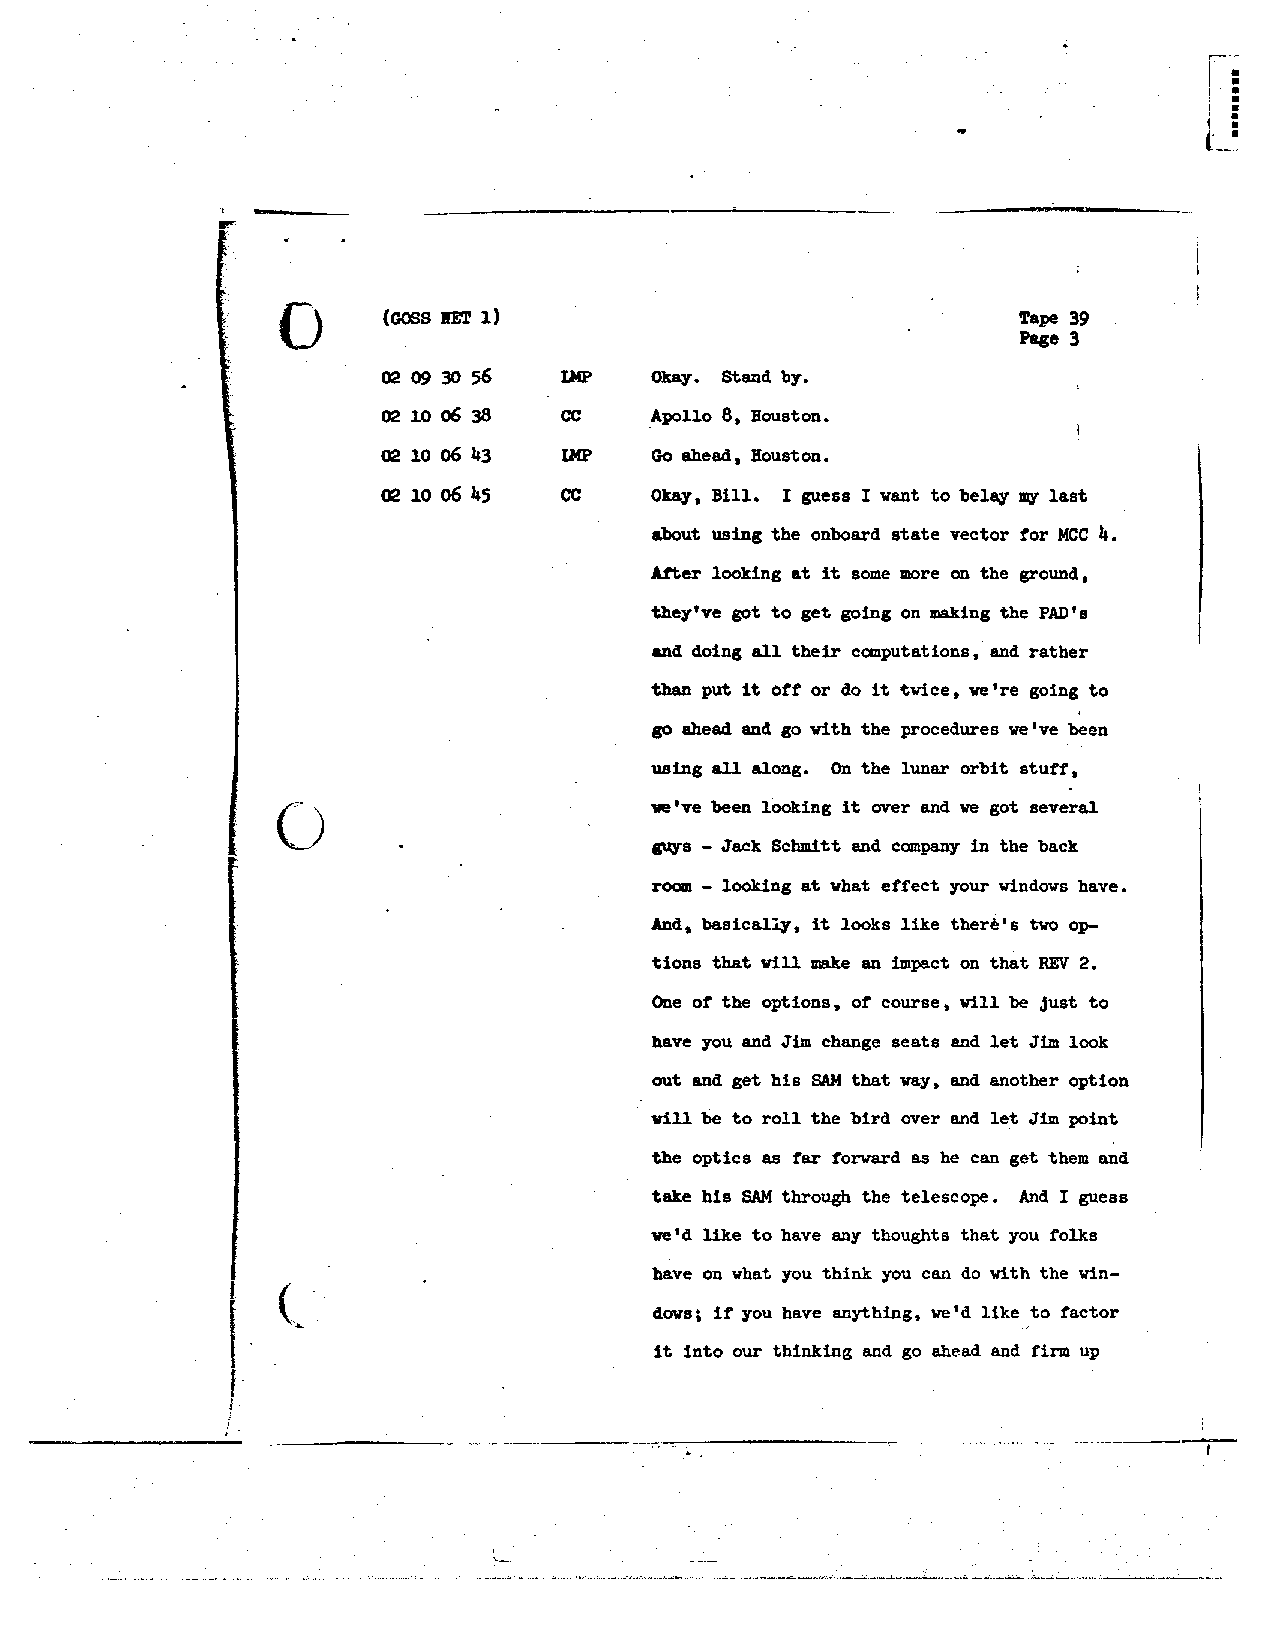 Page 305 of Apollo 8’s original transcript